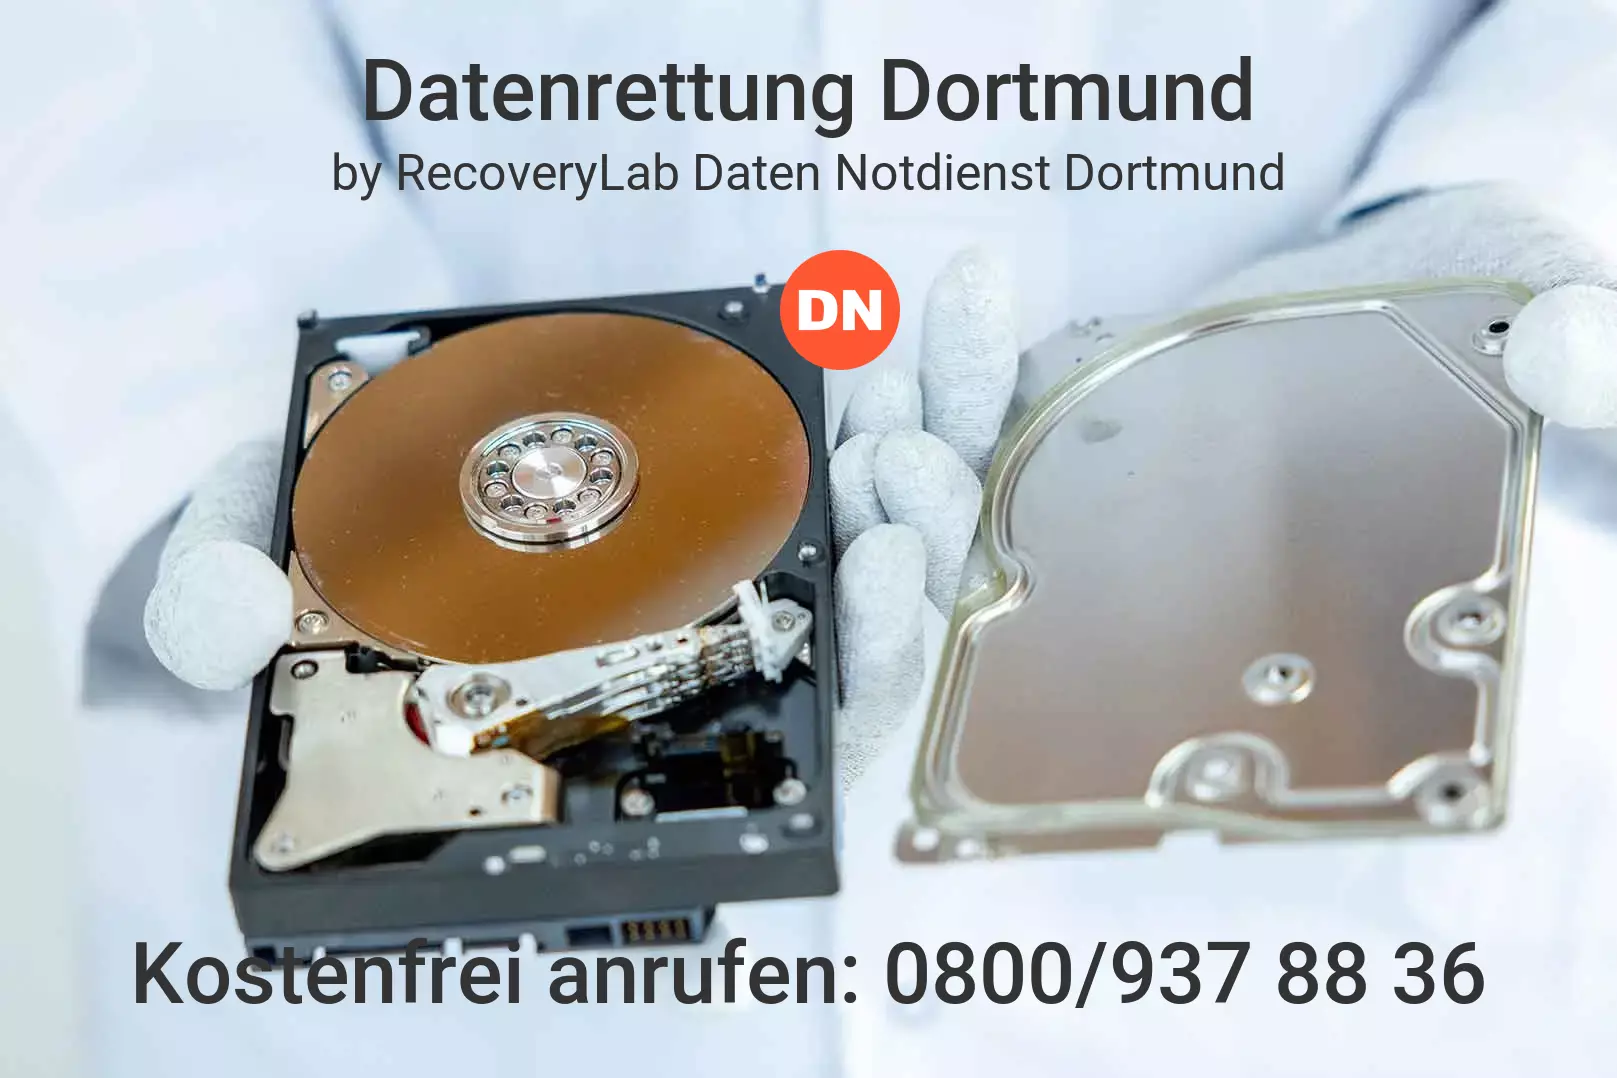 Fallstudie zu erfolgreicher Datenrettung interne Festplatte Dortmund